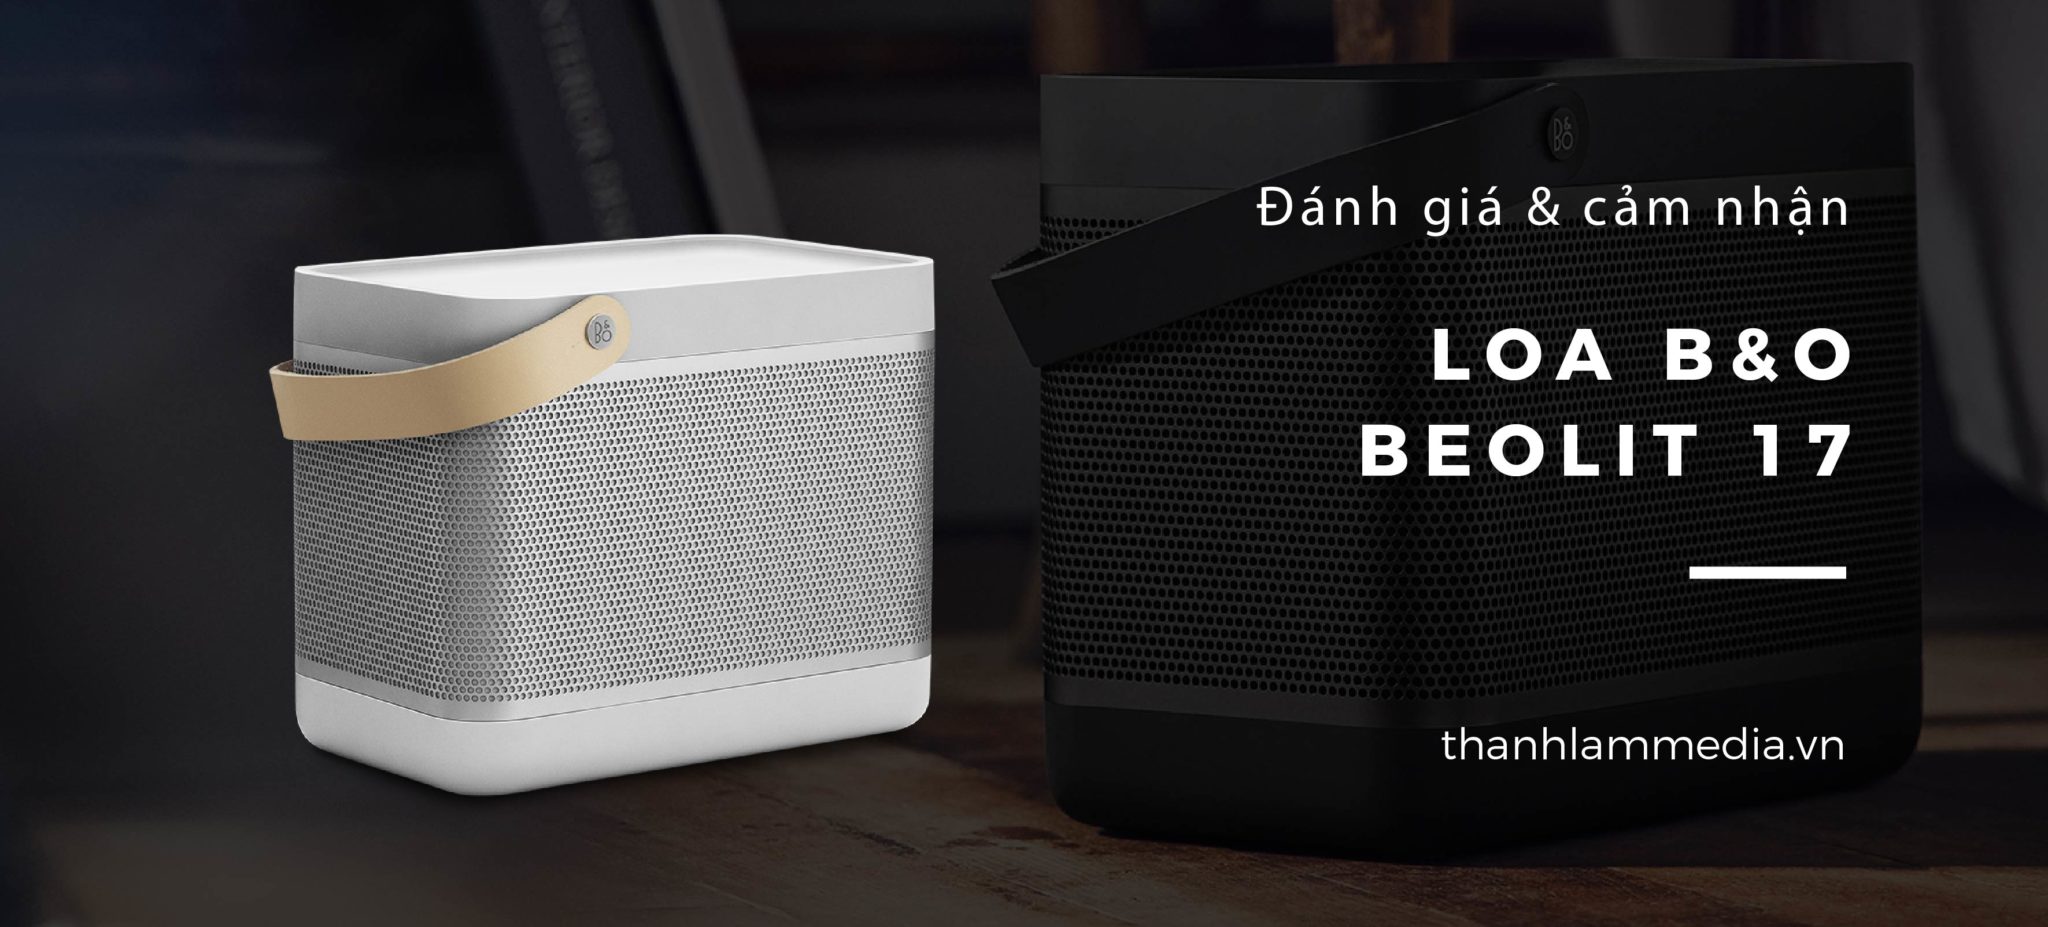 Review Đánh giá Loa Bluetooth B&O Beolit 17: Thiết kế độc đáo, âm thanh sống động 2